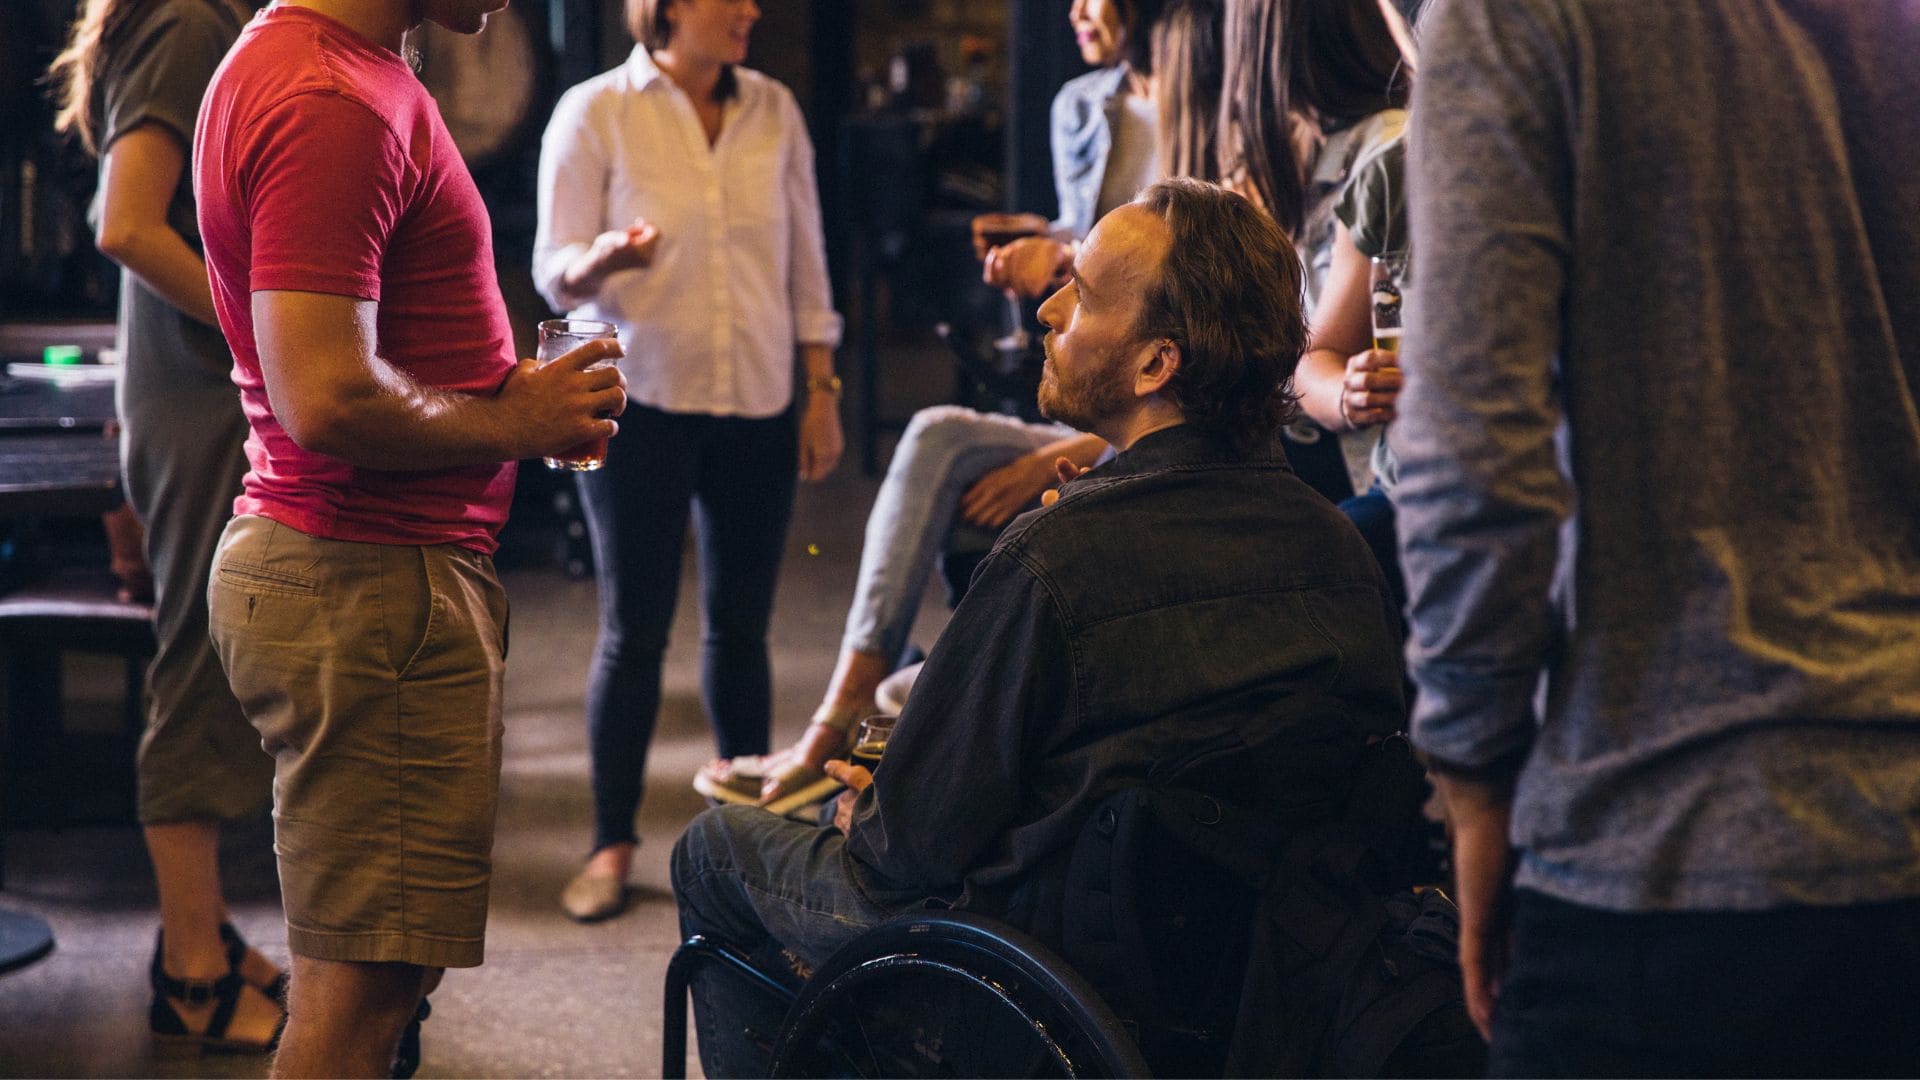 2 de cada 3 personas con discapacidad sienten falta de empatía social cuando salen de fiesta